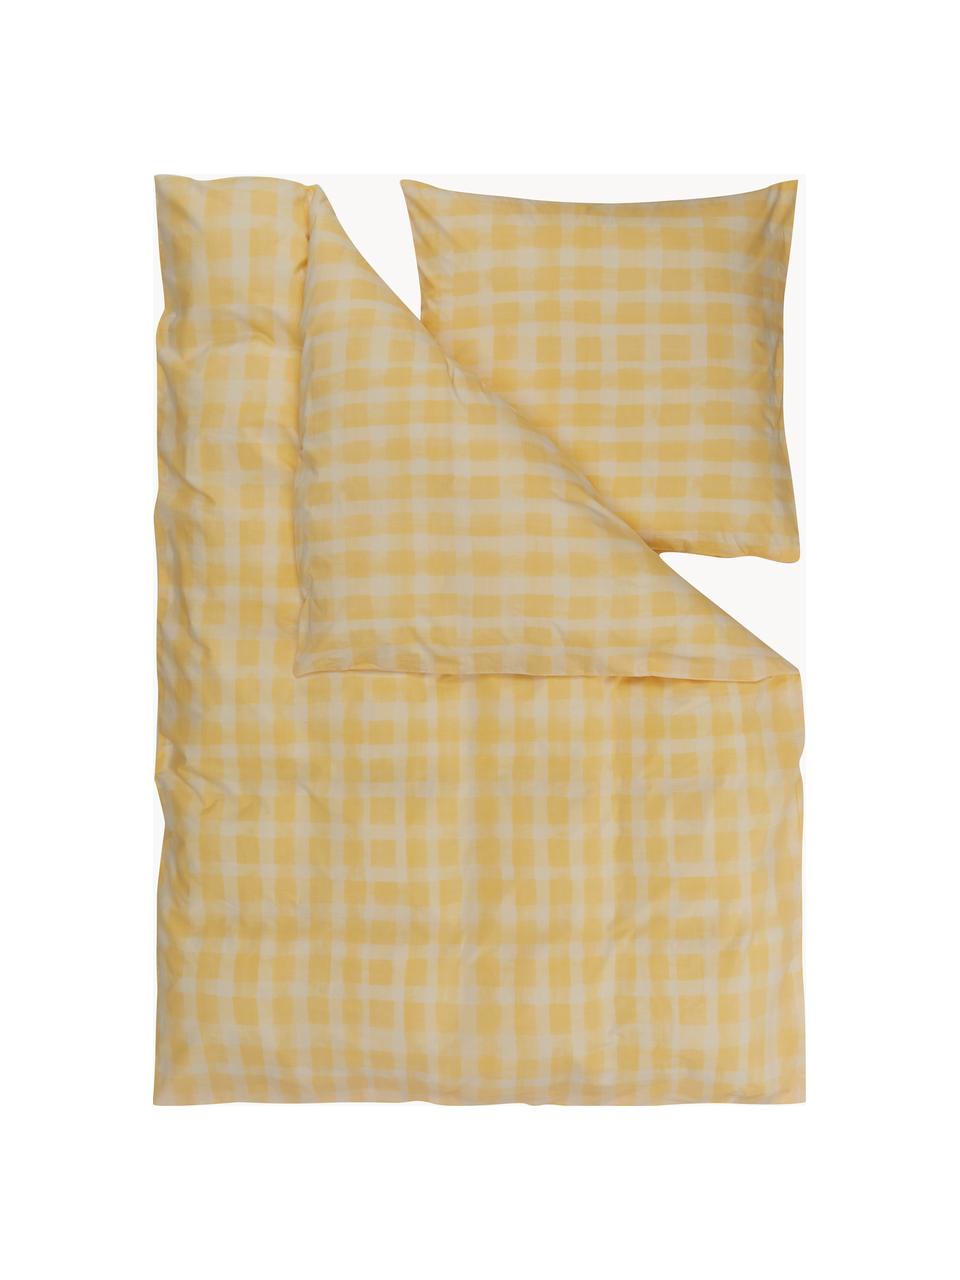 Ropa de cama de percal de algodón Milène, diseño Candice Gray, Amarillo, Cama 90 cm (135 x 220 cm), 2 pzas.